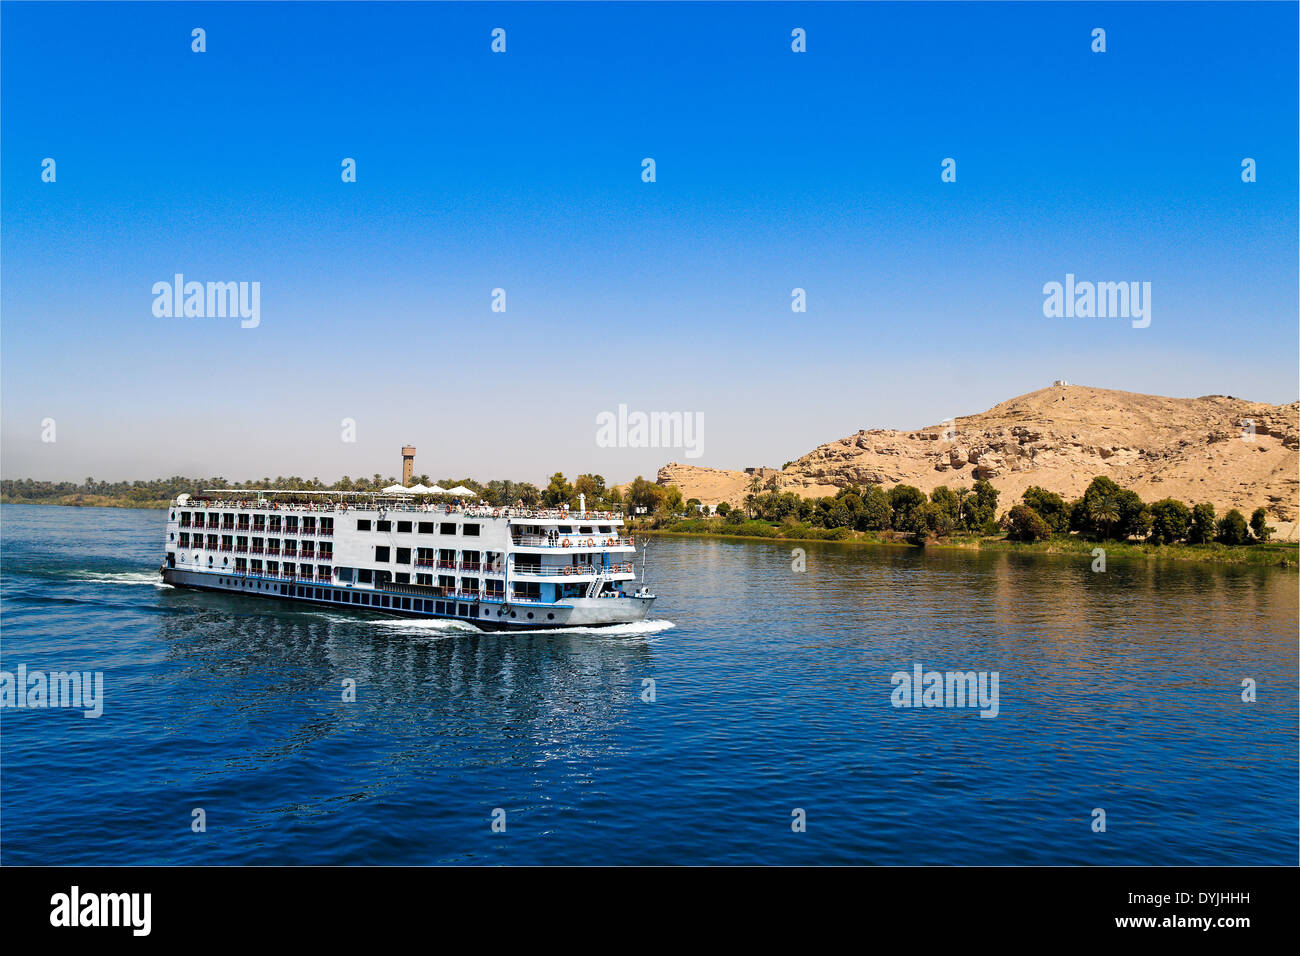 Eine Kreuzfahrt auf dem Nil ist häufig Bestandteil einer Reise nach Ägypten, Eine Kreuzfahrt Auf Dem Nil; Kreuzfahrtschiff; Stockfoto